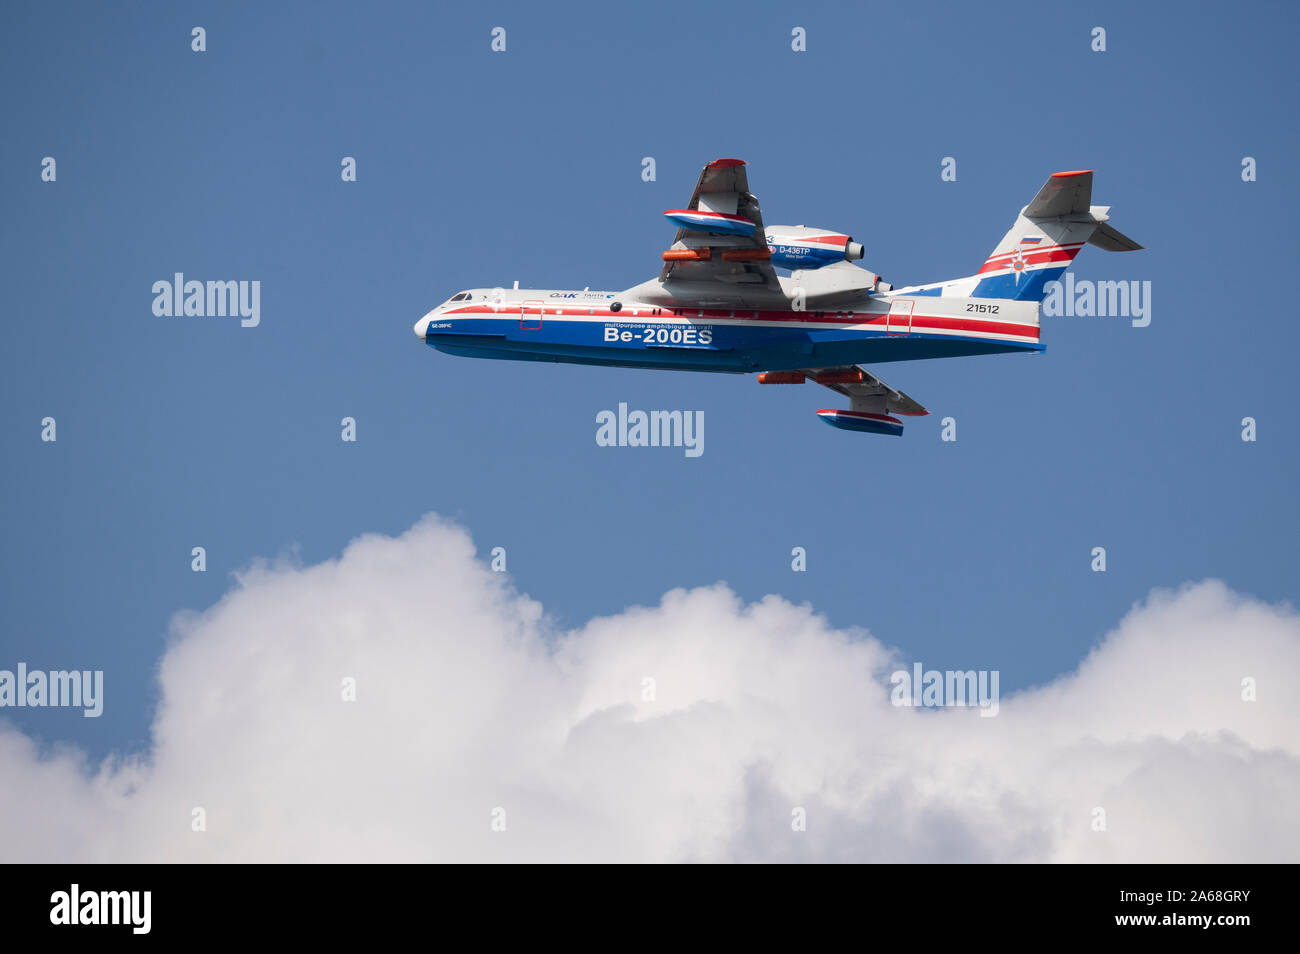 Aeródromo Zhukovsky Moscú Rusia el 31 de agosto de 2019: demostración de vuelo de un avión multipropósito de avión anfibio Be-200 la sal aeroespacial internacional Foto de stock